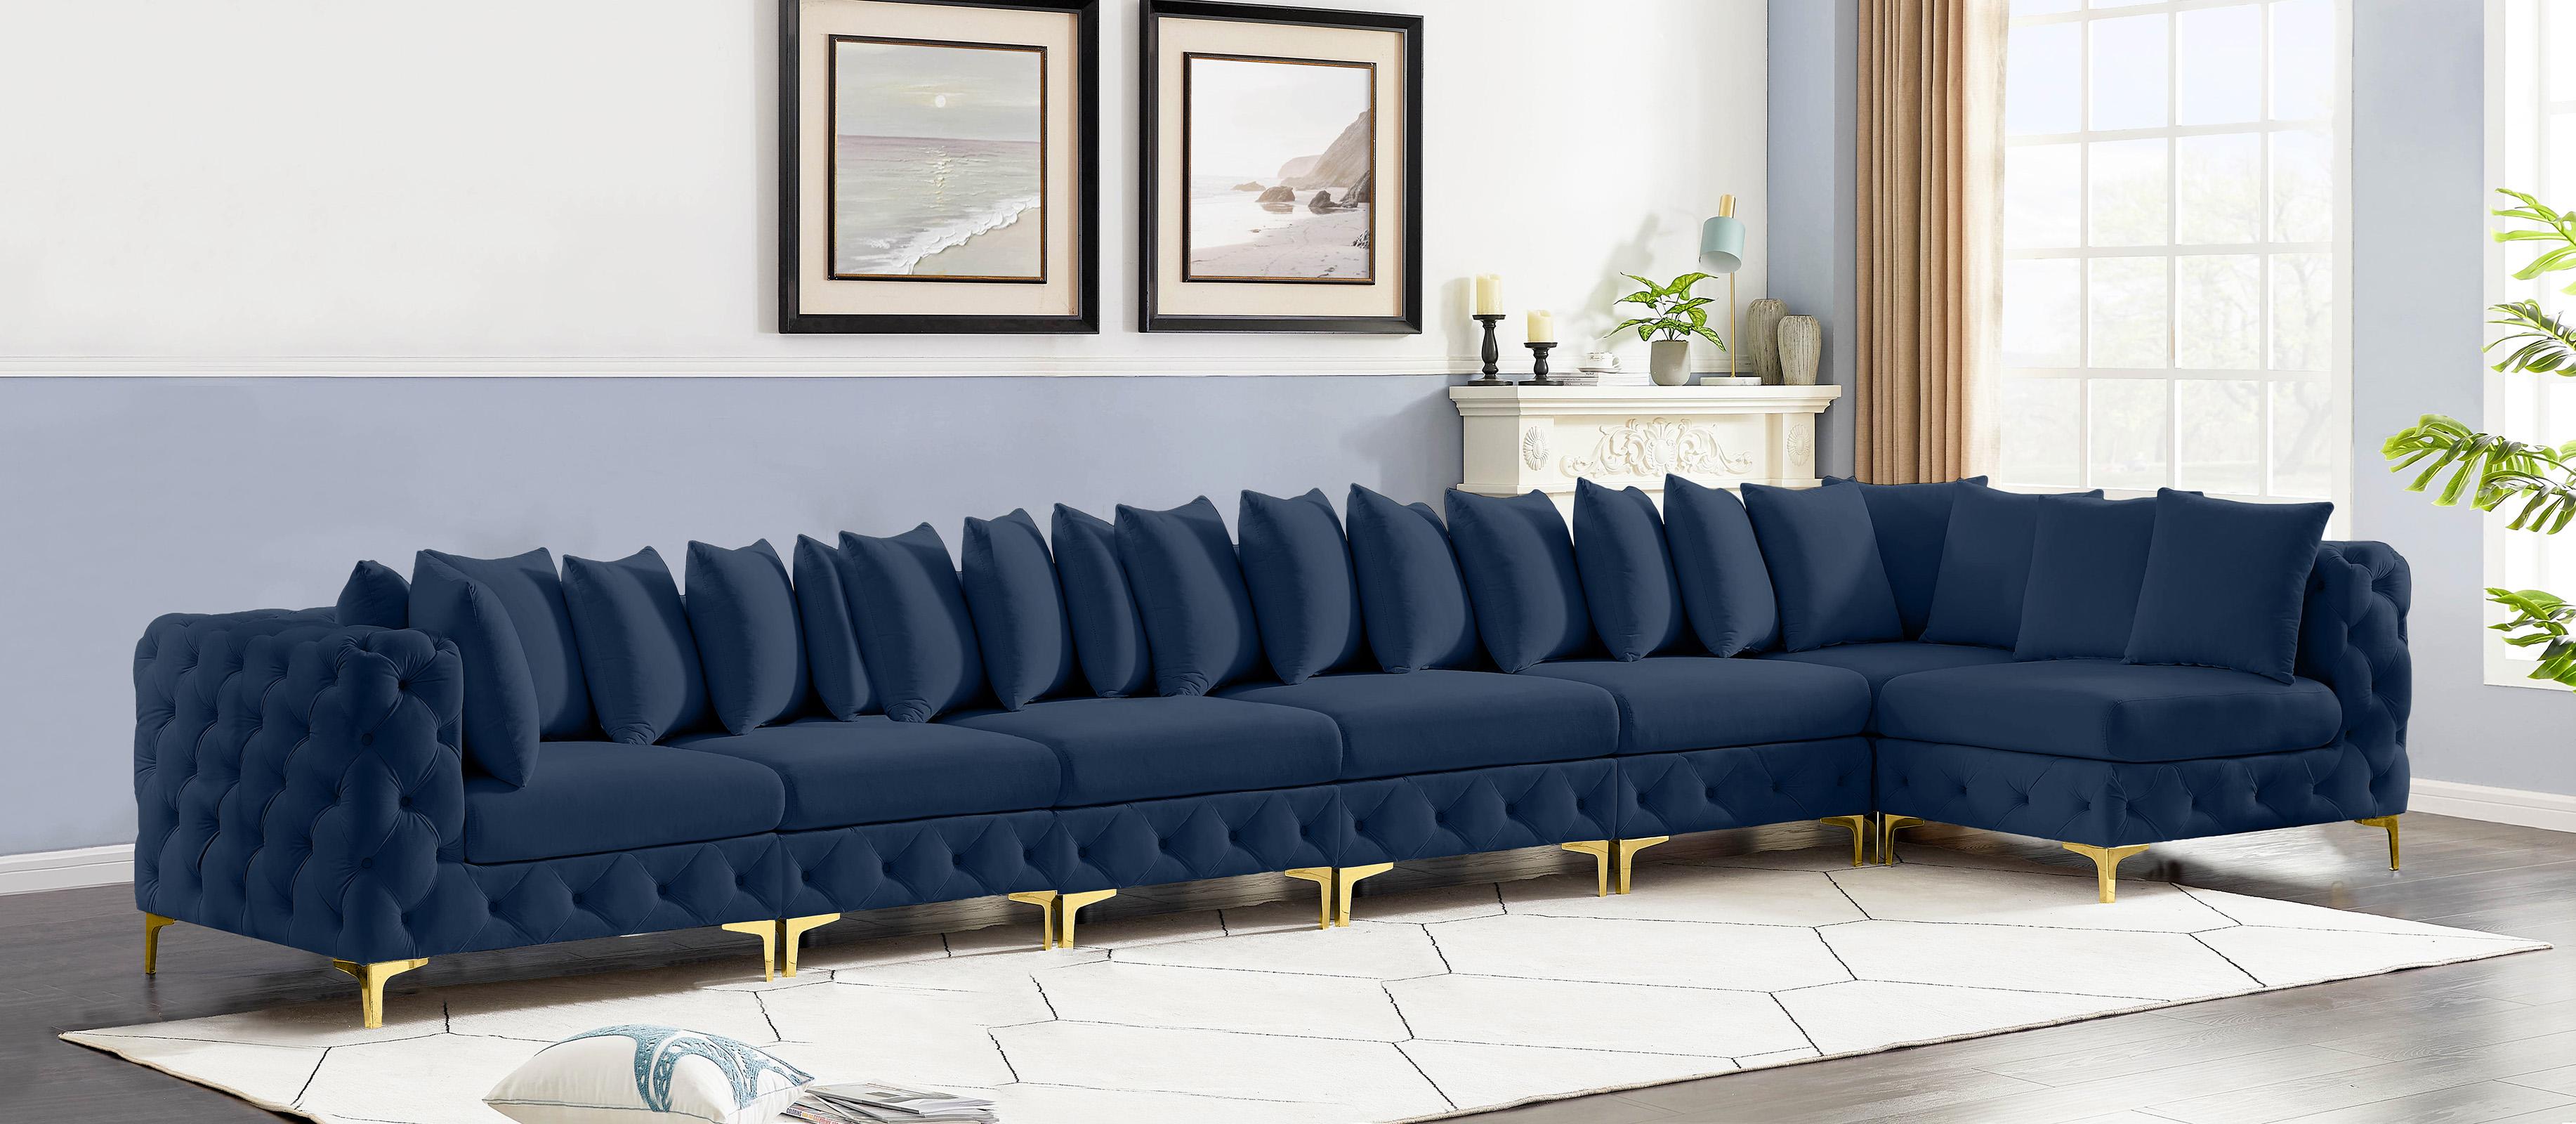 

    
686Navy-Sec8B Meridian Furniture Modular Sectional Sofa
